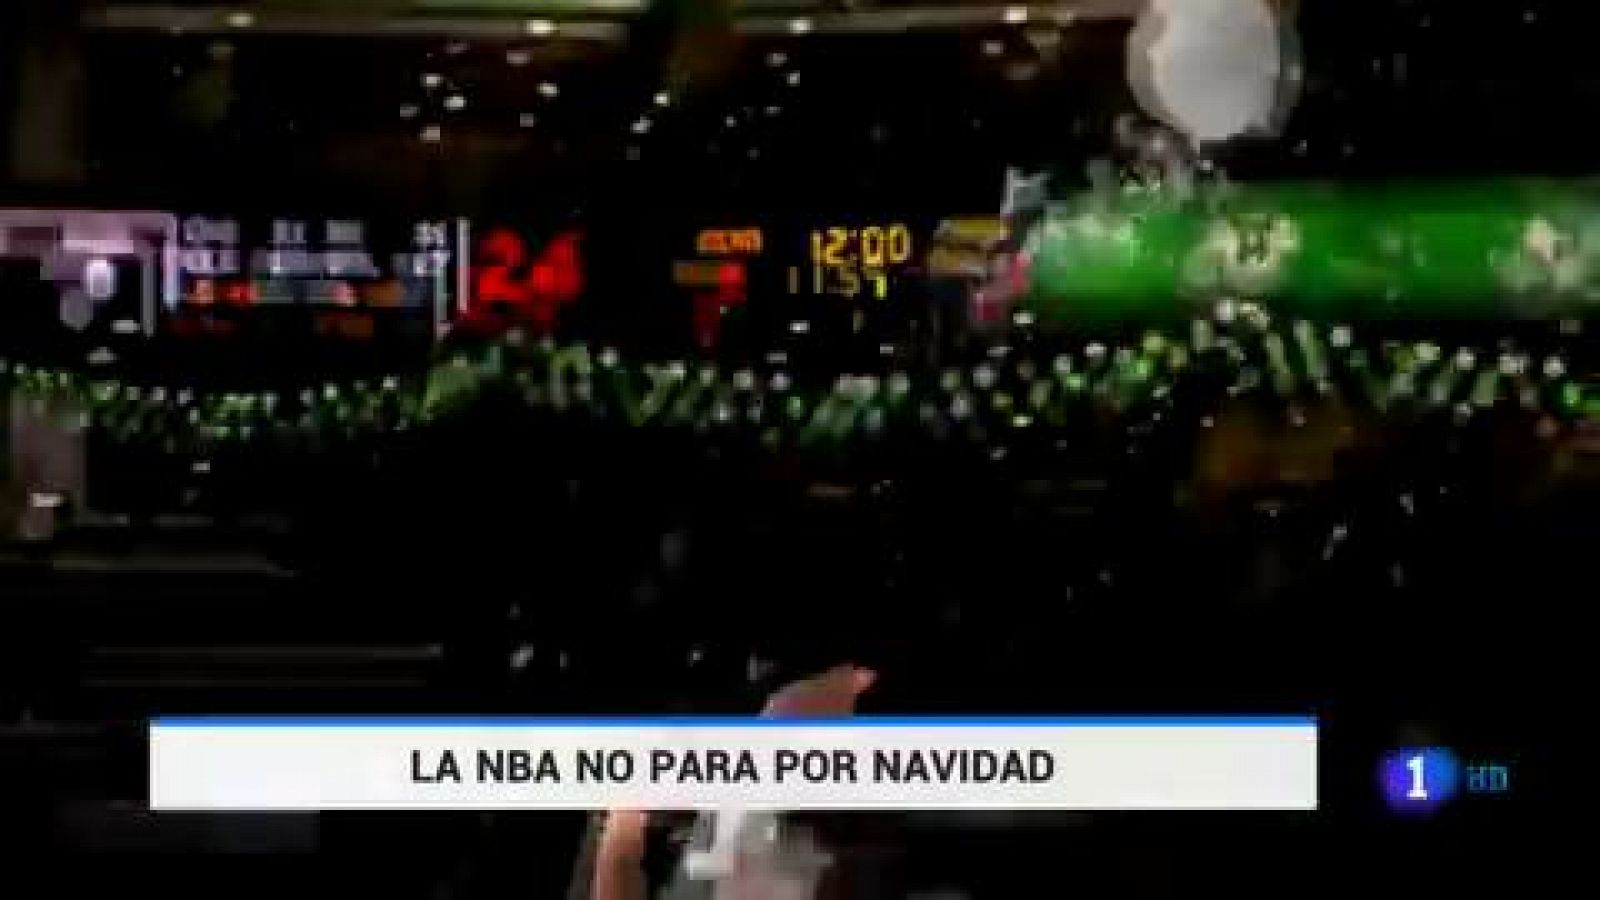 NBA | Partidazos de Ibaka y Ricky antes del parón en Nochebuena y el acelerón en Navidad - RTVE.es